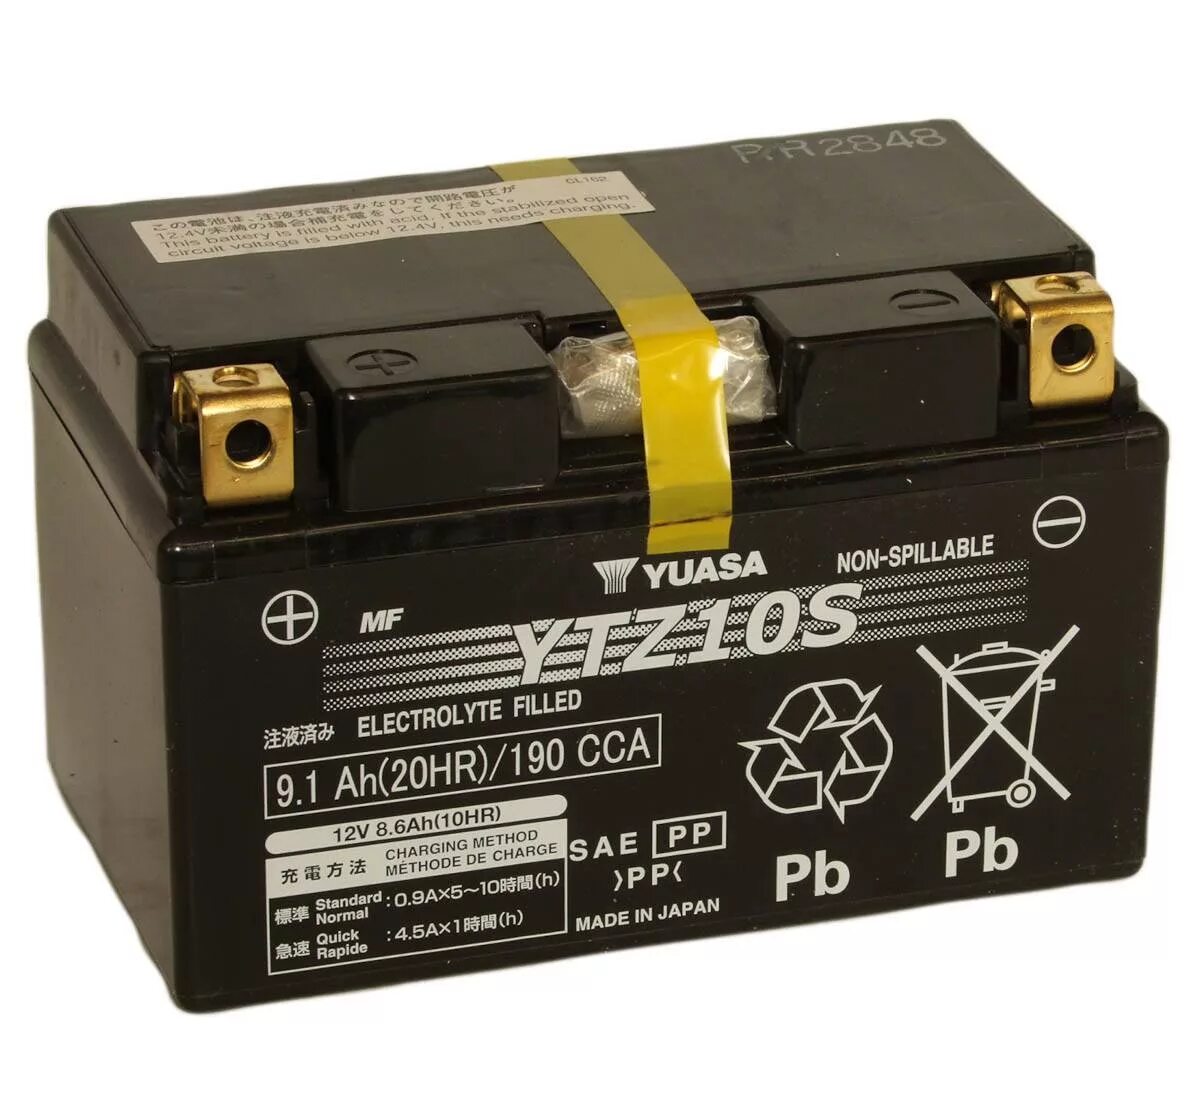 Battery s. Yuasa ytz10s. Ytz10s MF. Аккумулятор cougar ytz10s. Аккумулятор ytz10s литиевый.